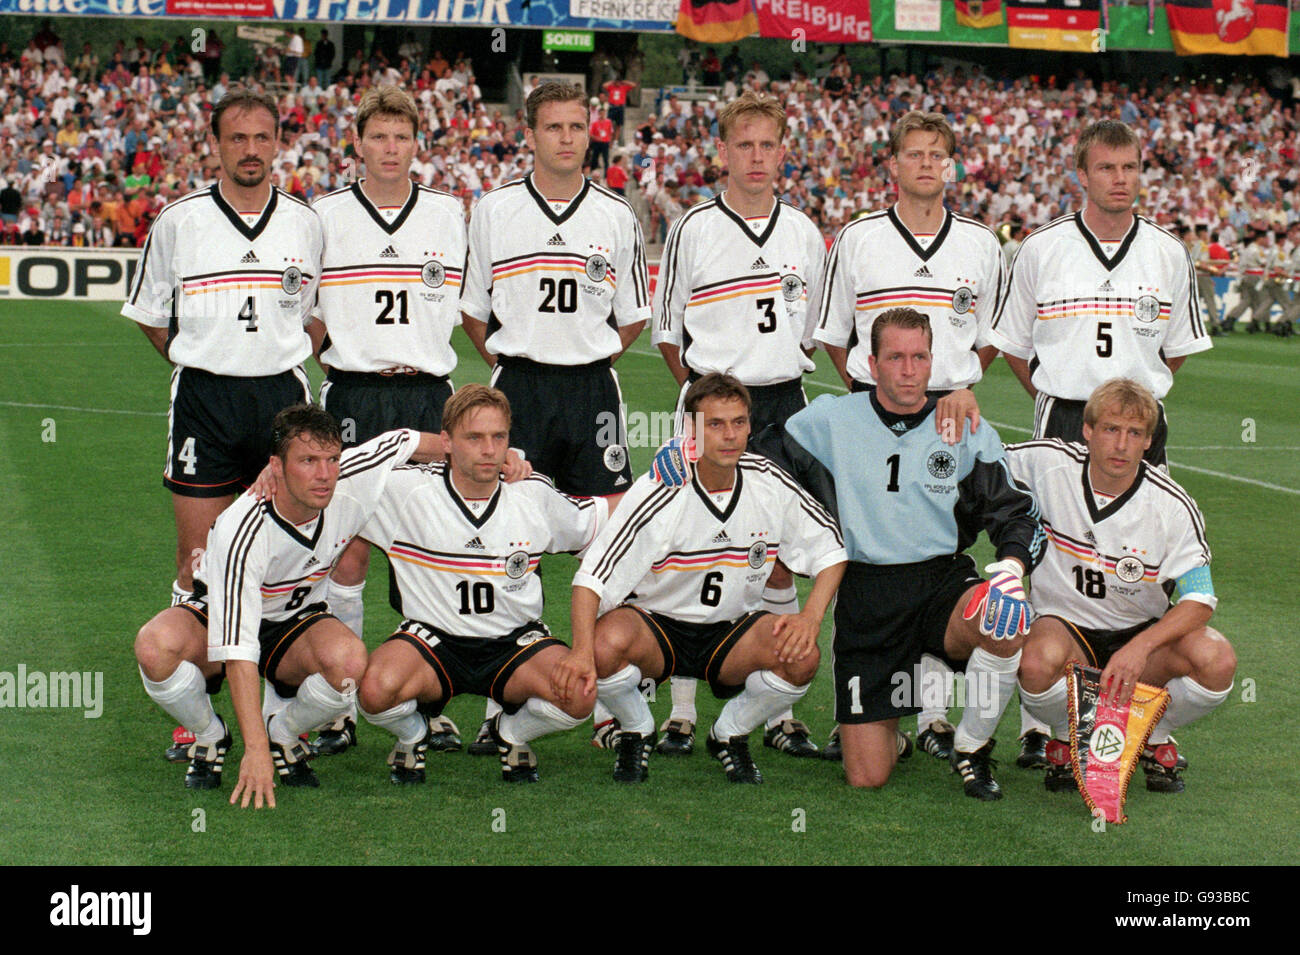 Fußball - Weltmeisterschaft Frankreich 98 - Gruppe F - Deutschland / Iran.  Deutschland-Teamgruppe Stockfotografie - Alamy